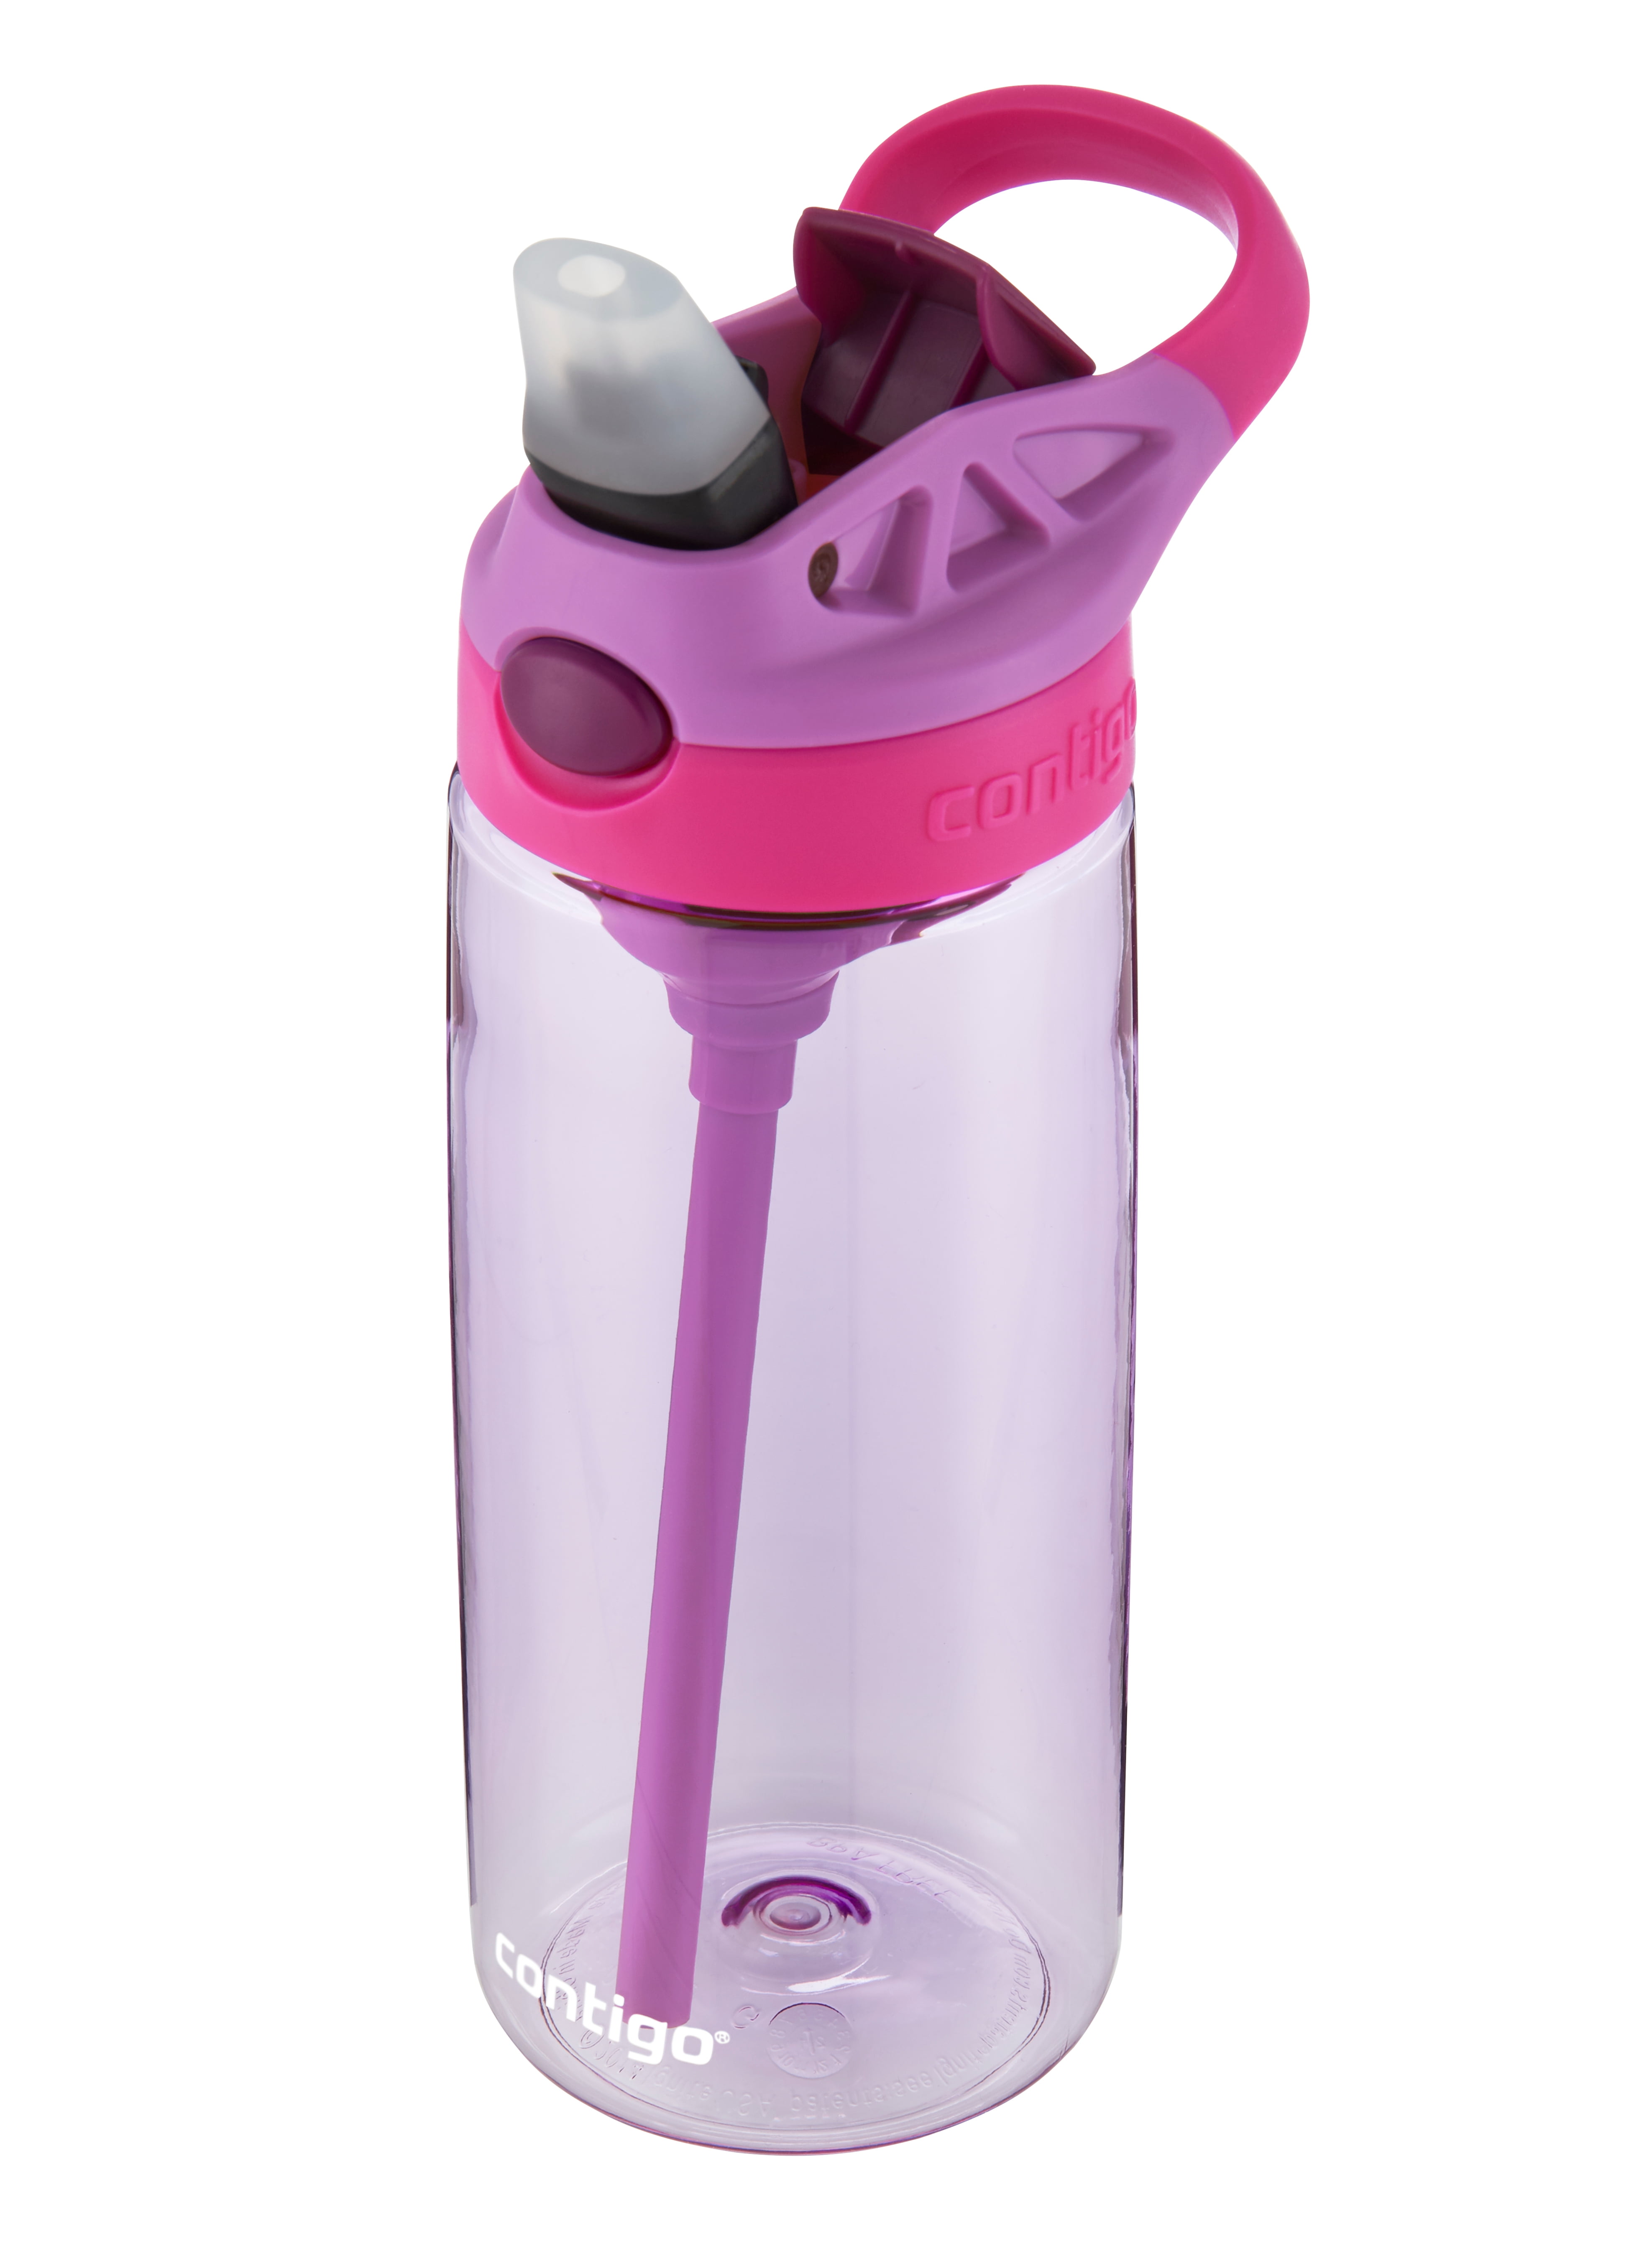 Contigo Kids Water Bottle with AUTOSPOUT Straw Lid Purple Orchid, 20 fl oz.  